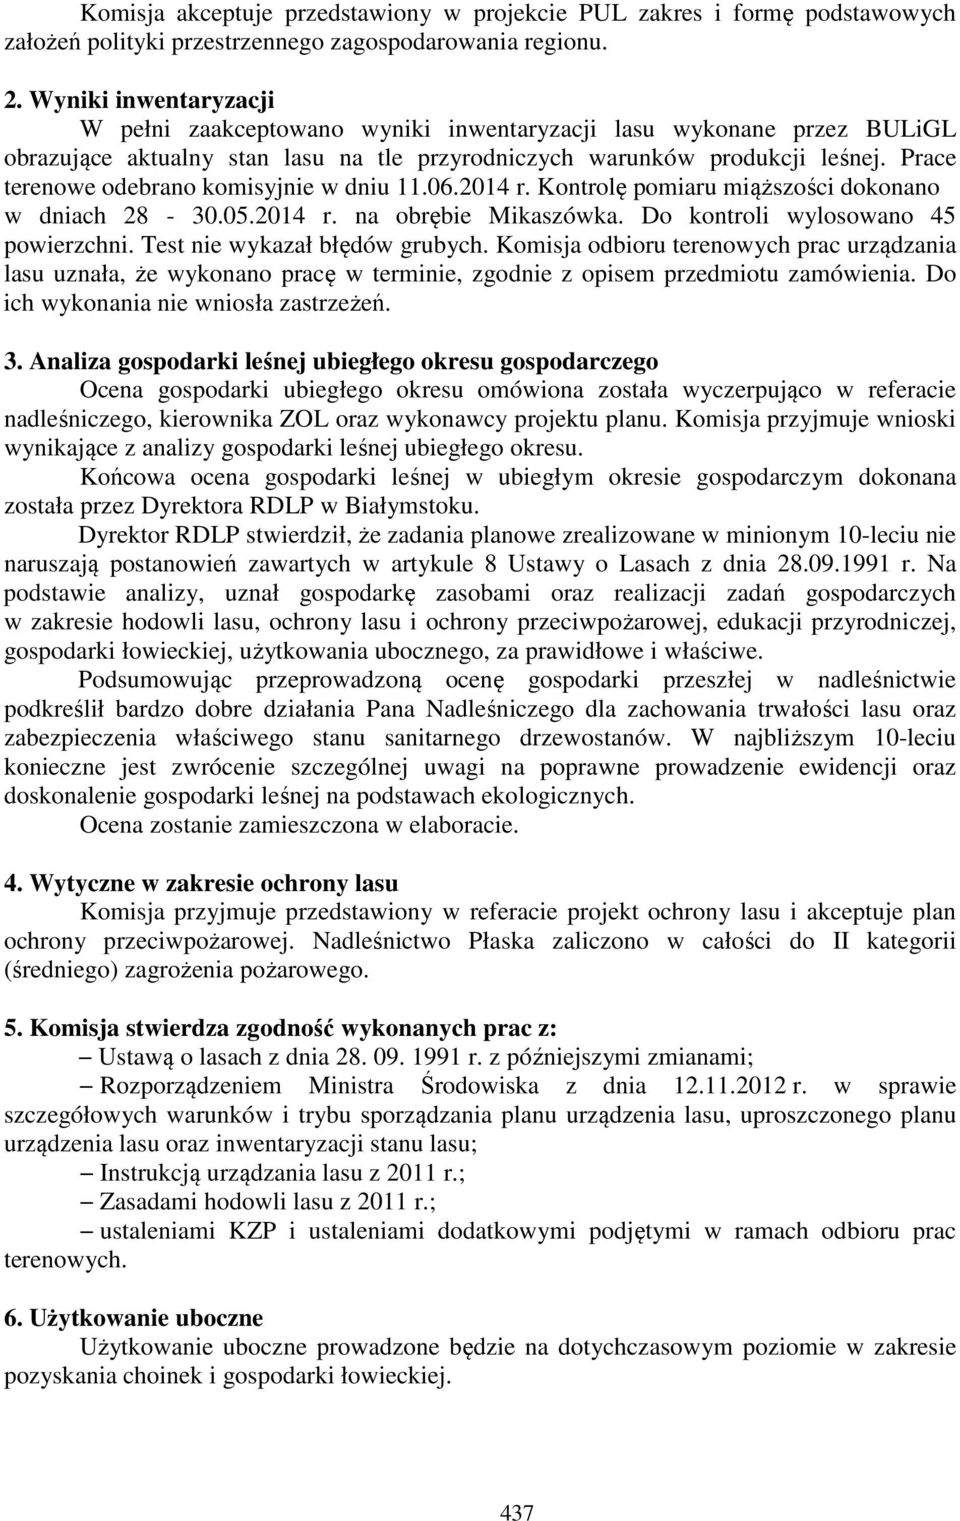 Prace terenowe odebrano komisyjnie w dniu 11.06.2014 r. Kontrolę pomiaru miąższości dokonano w dniach 28-30.05.2014 r. na obrębie Mikaszówka. Do kontroli wylosowano 45 powierzchni.